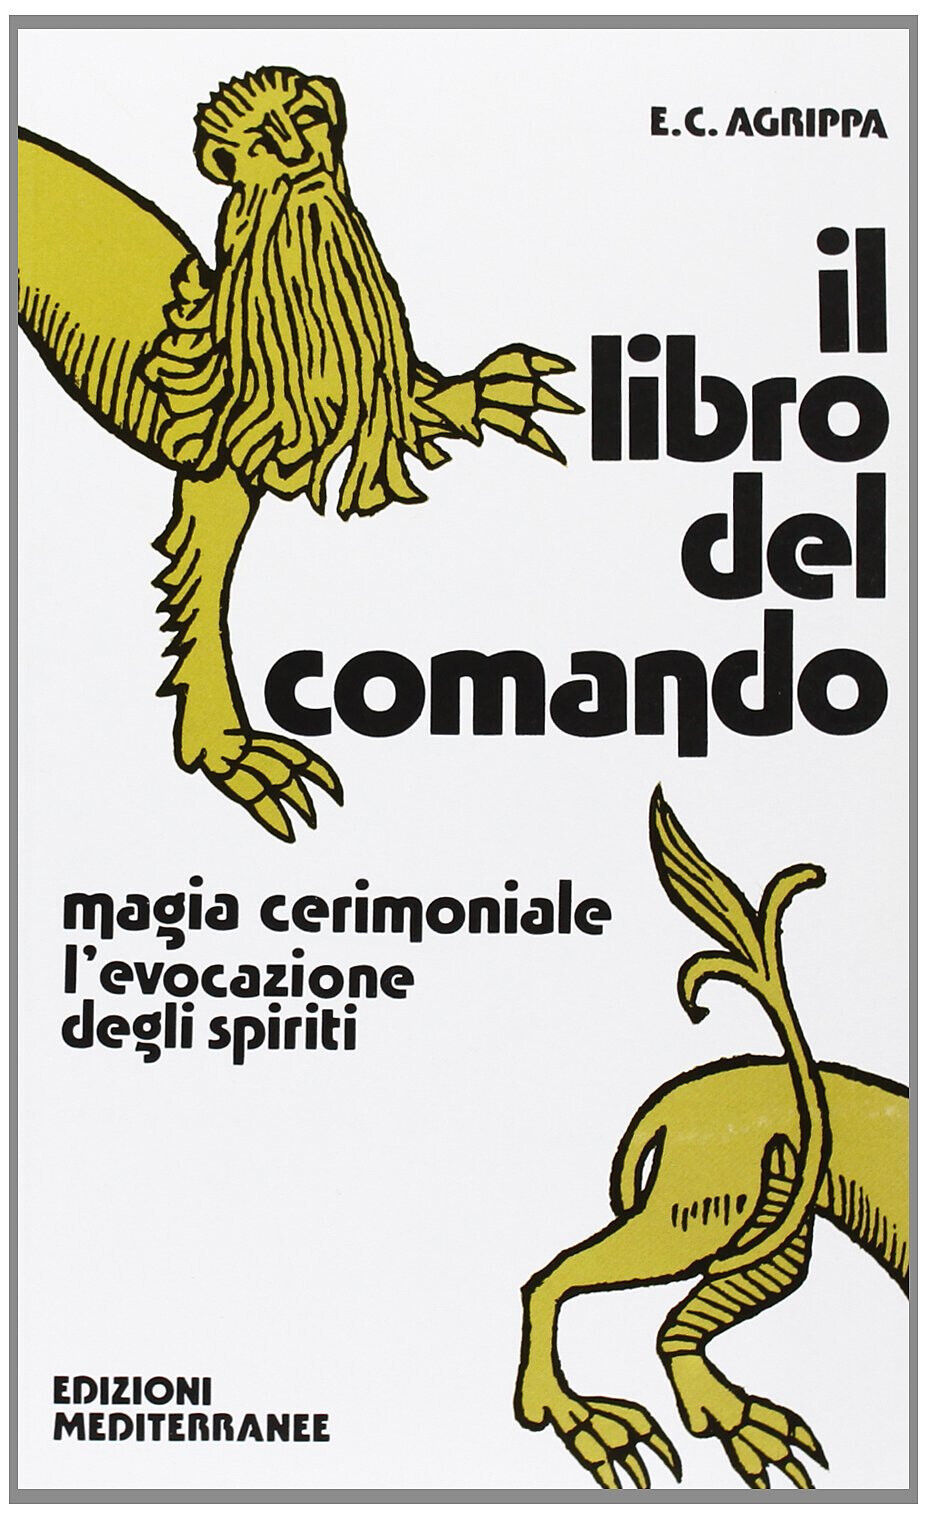 Il libro del comando - Cornelio Enrico Agrippa - Edizioni Mediterranee, 1983 libro usato